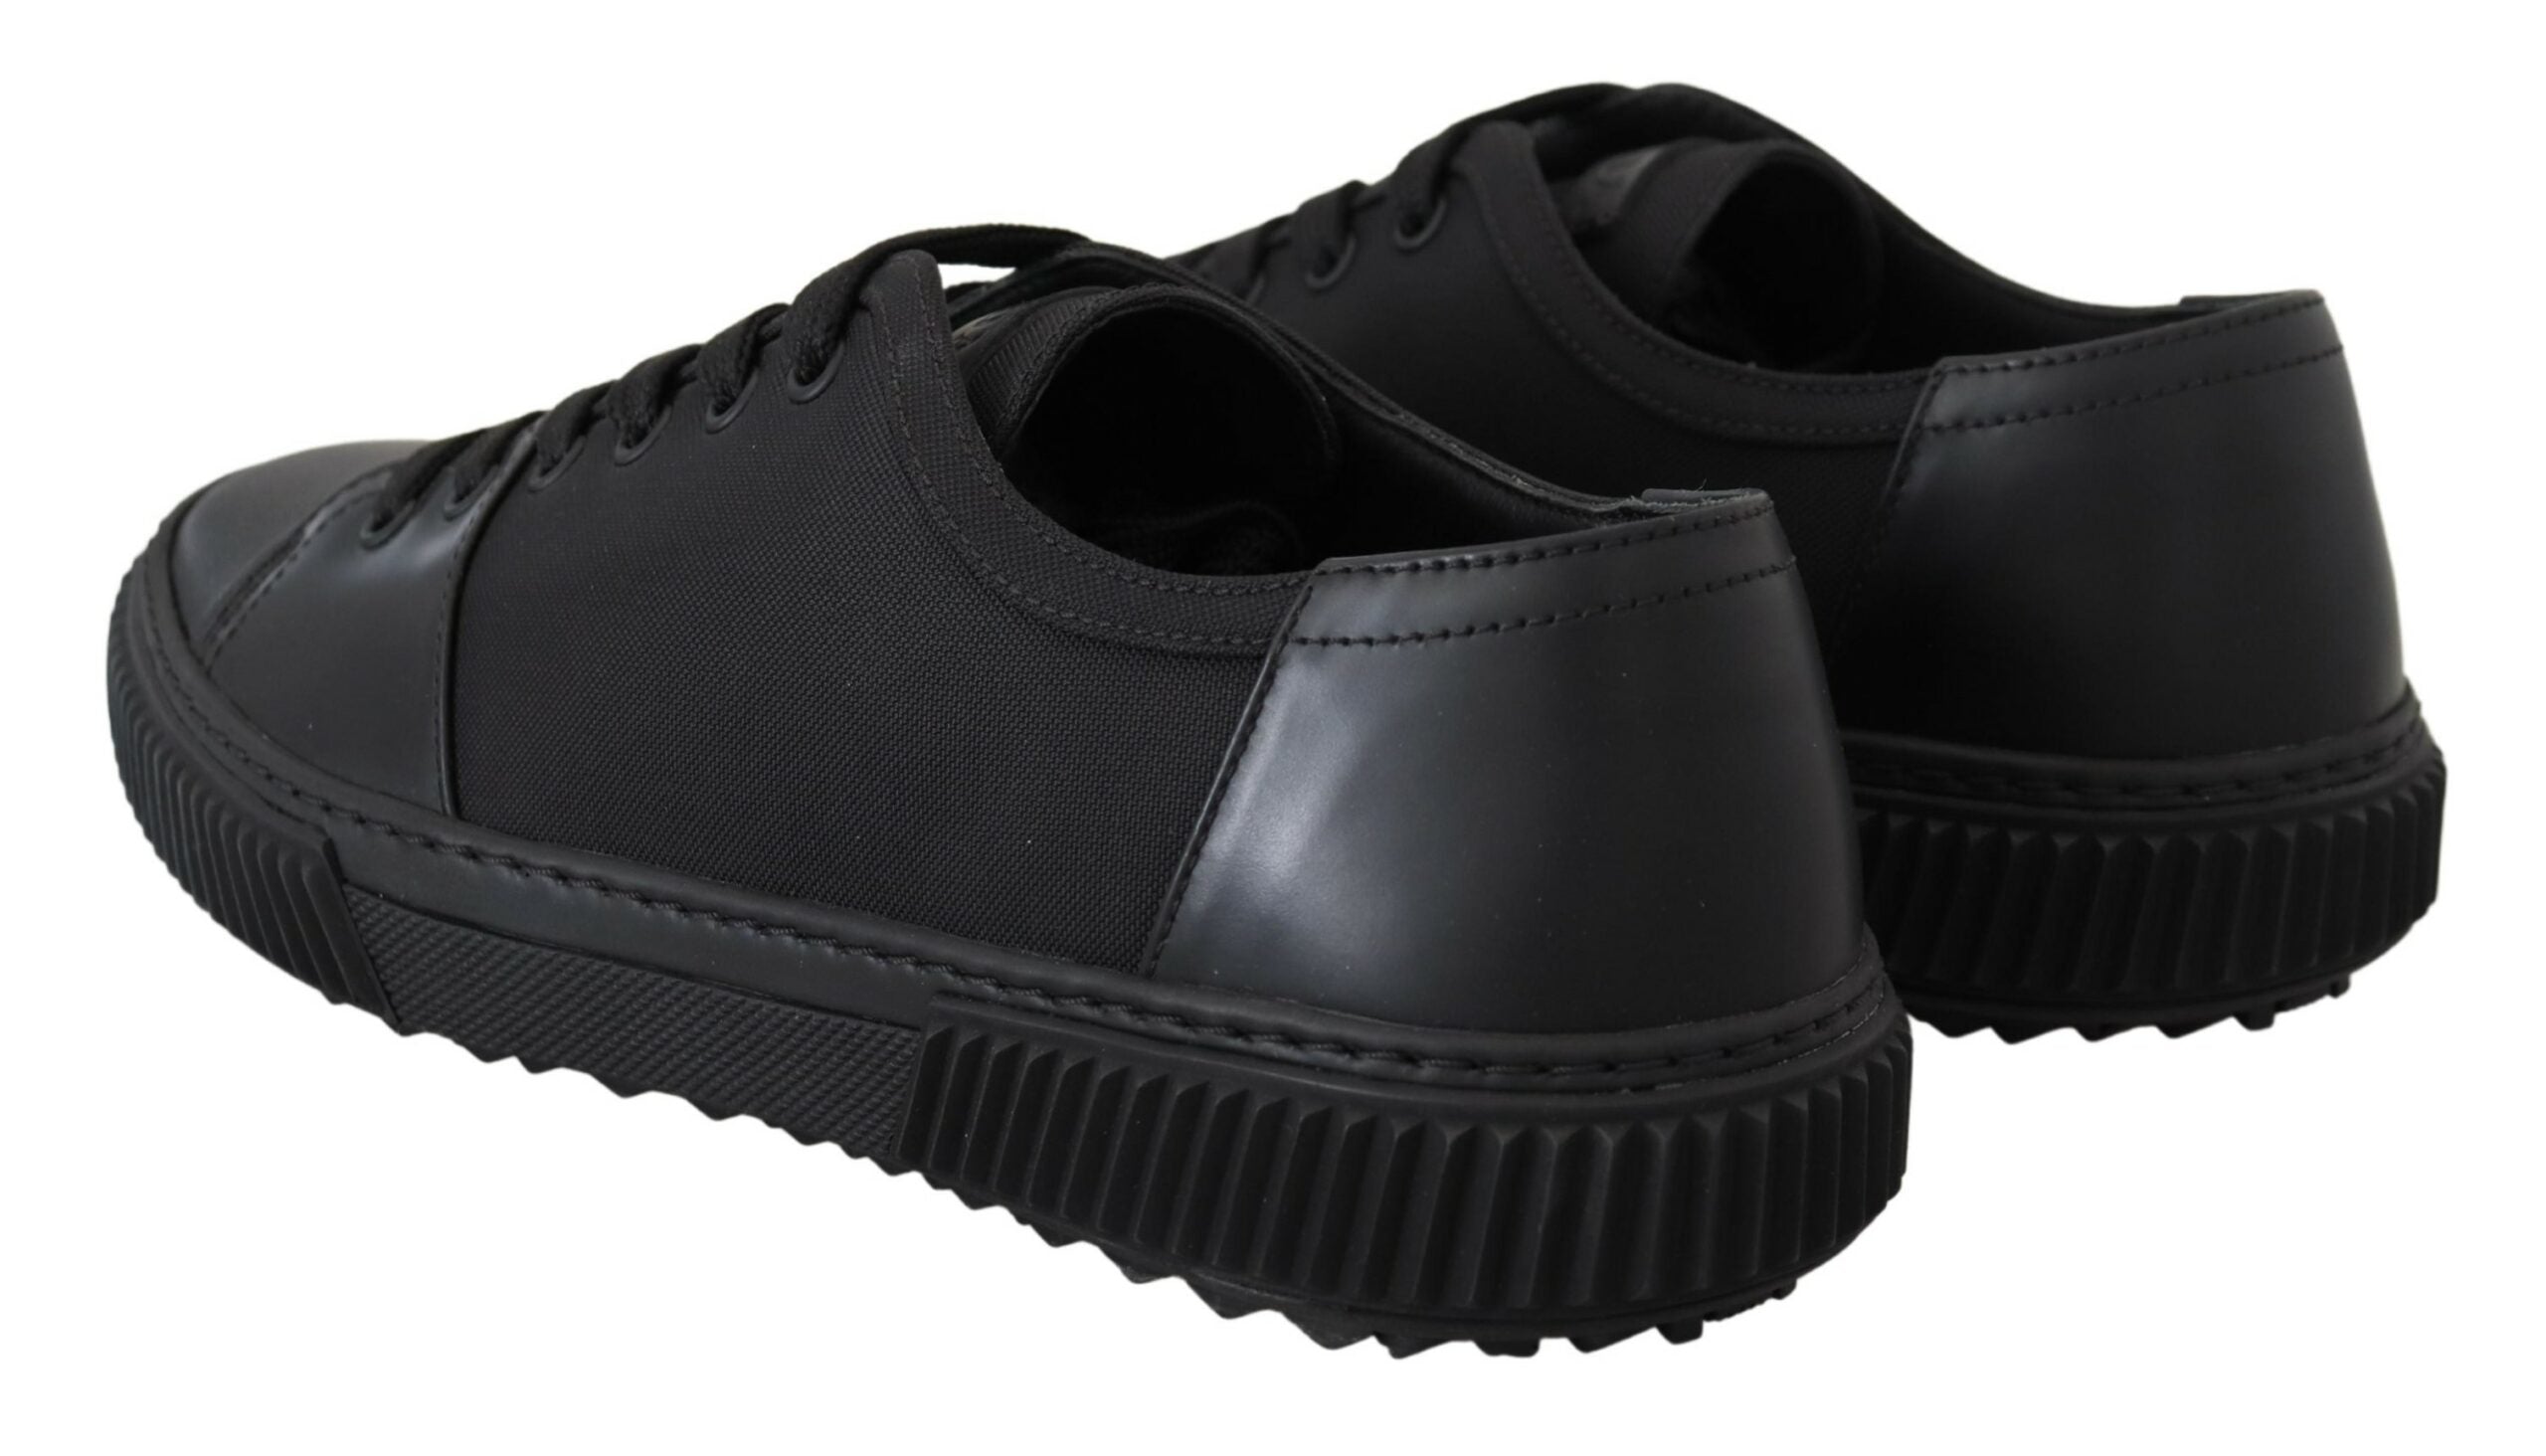 Prada Elegant Black Nylon Low-top Sneakers